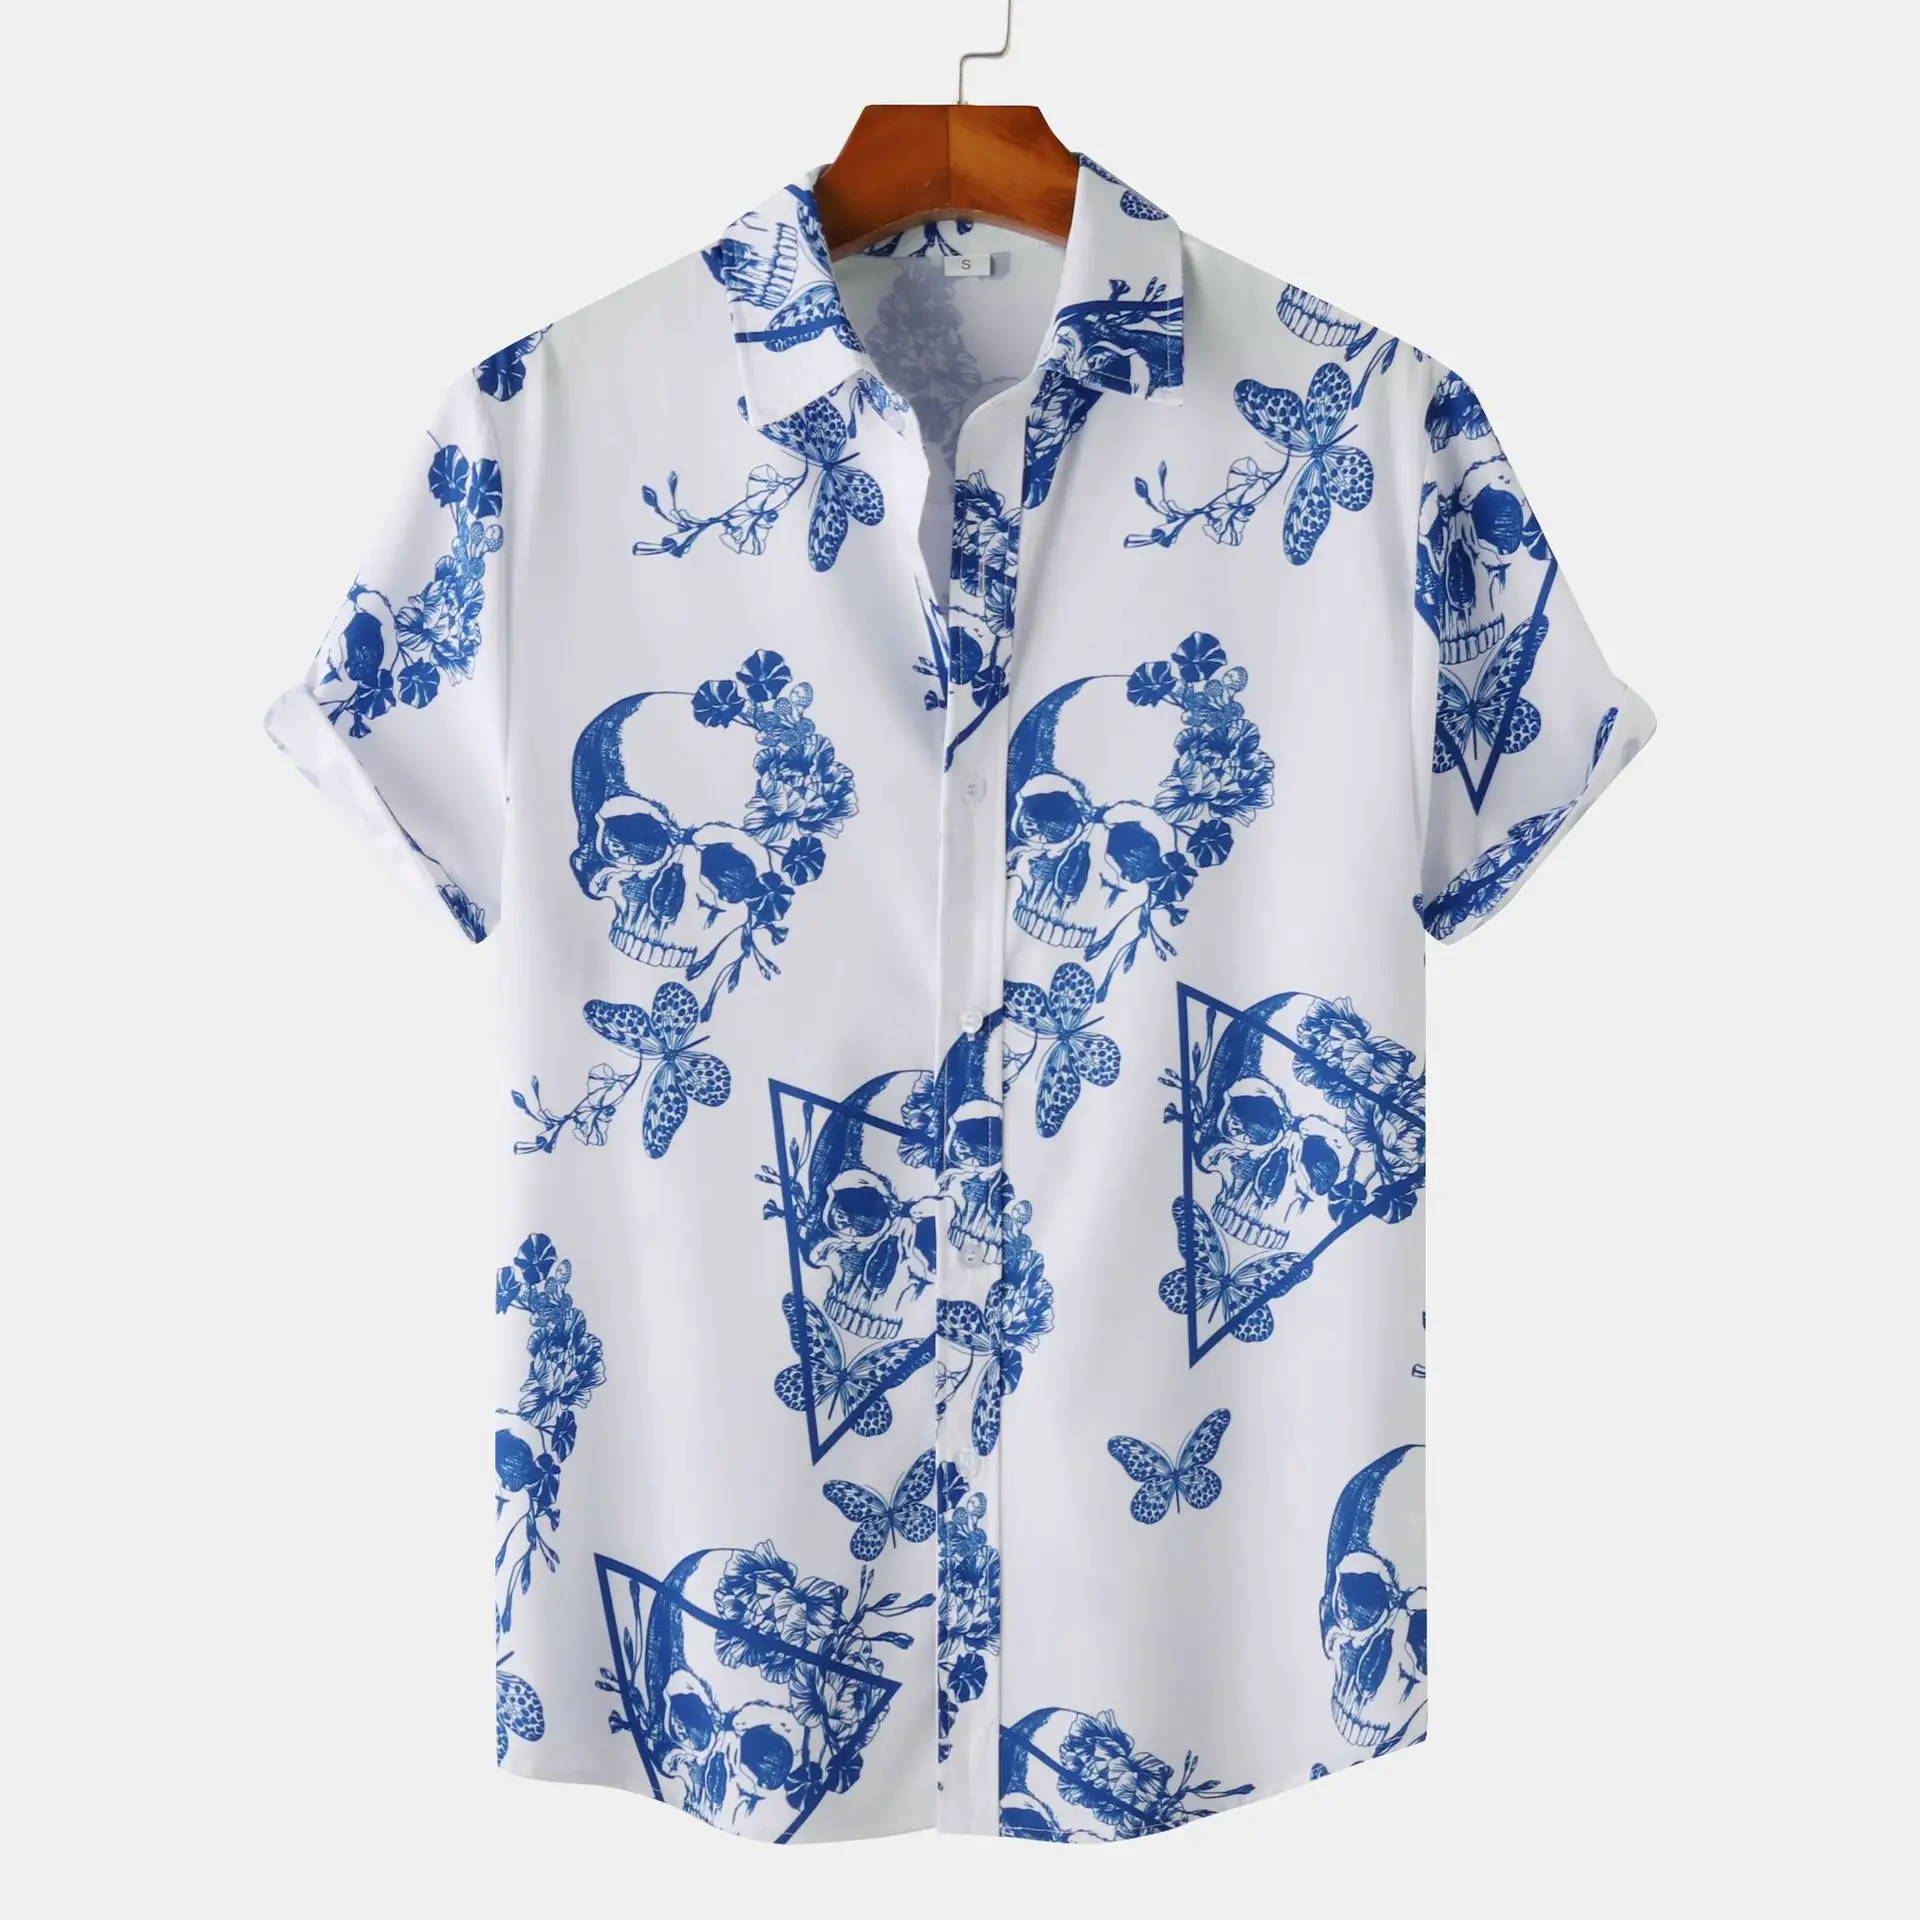 Chaoqiブランド卸売高品質ハワイシャツカスタムホリデープリント男性花柄シャツとショートセット